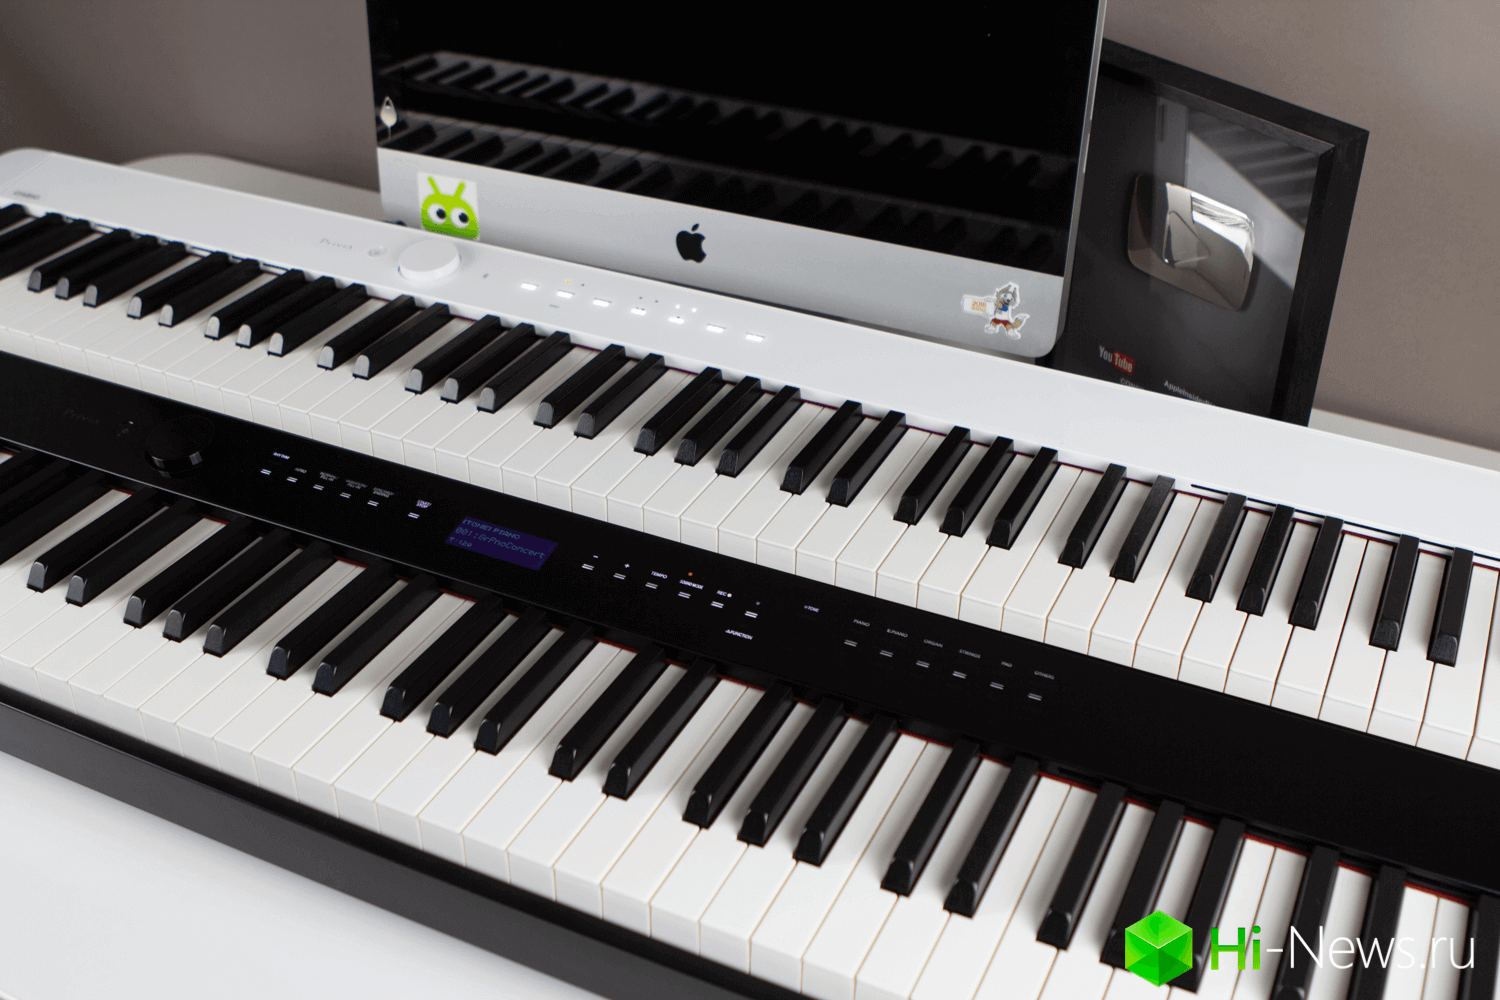 Joues en un format compact et технологичном piano. Il y a même de Bluetooth